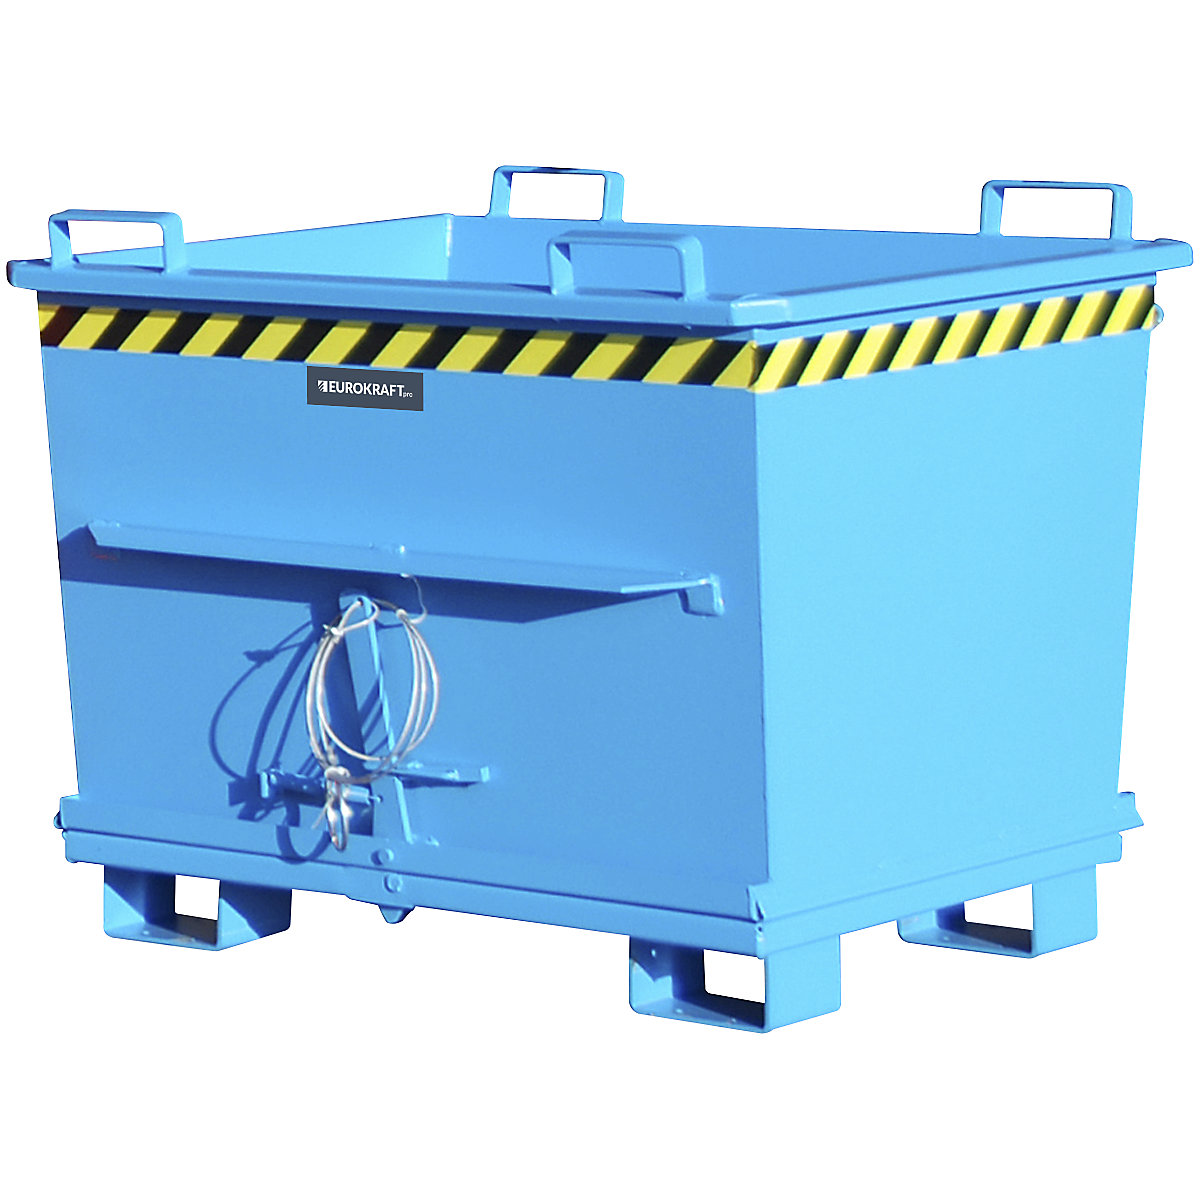 Conteneur conique à fond ouvrant – eurokraft pro, capacité 0,7 m³, force 1500 kg, coloris bleu RAL 5012-13